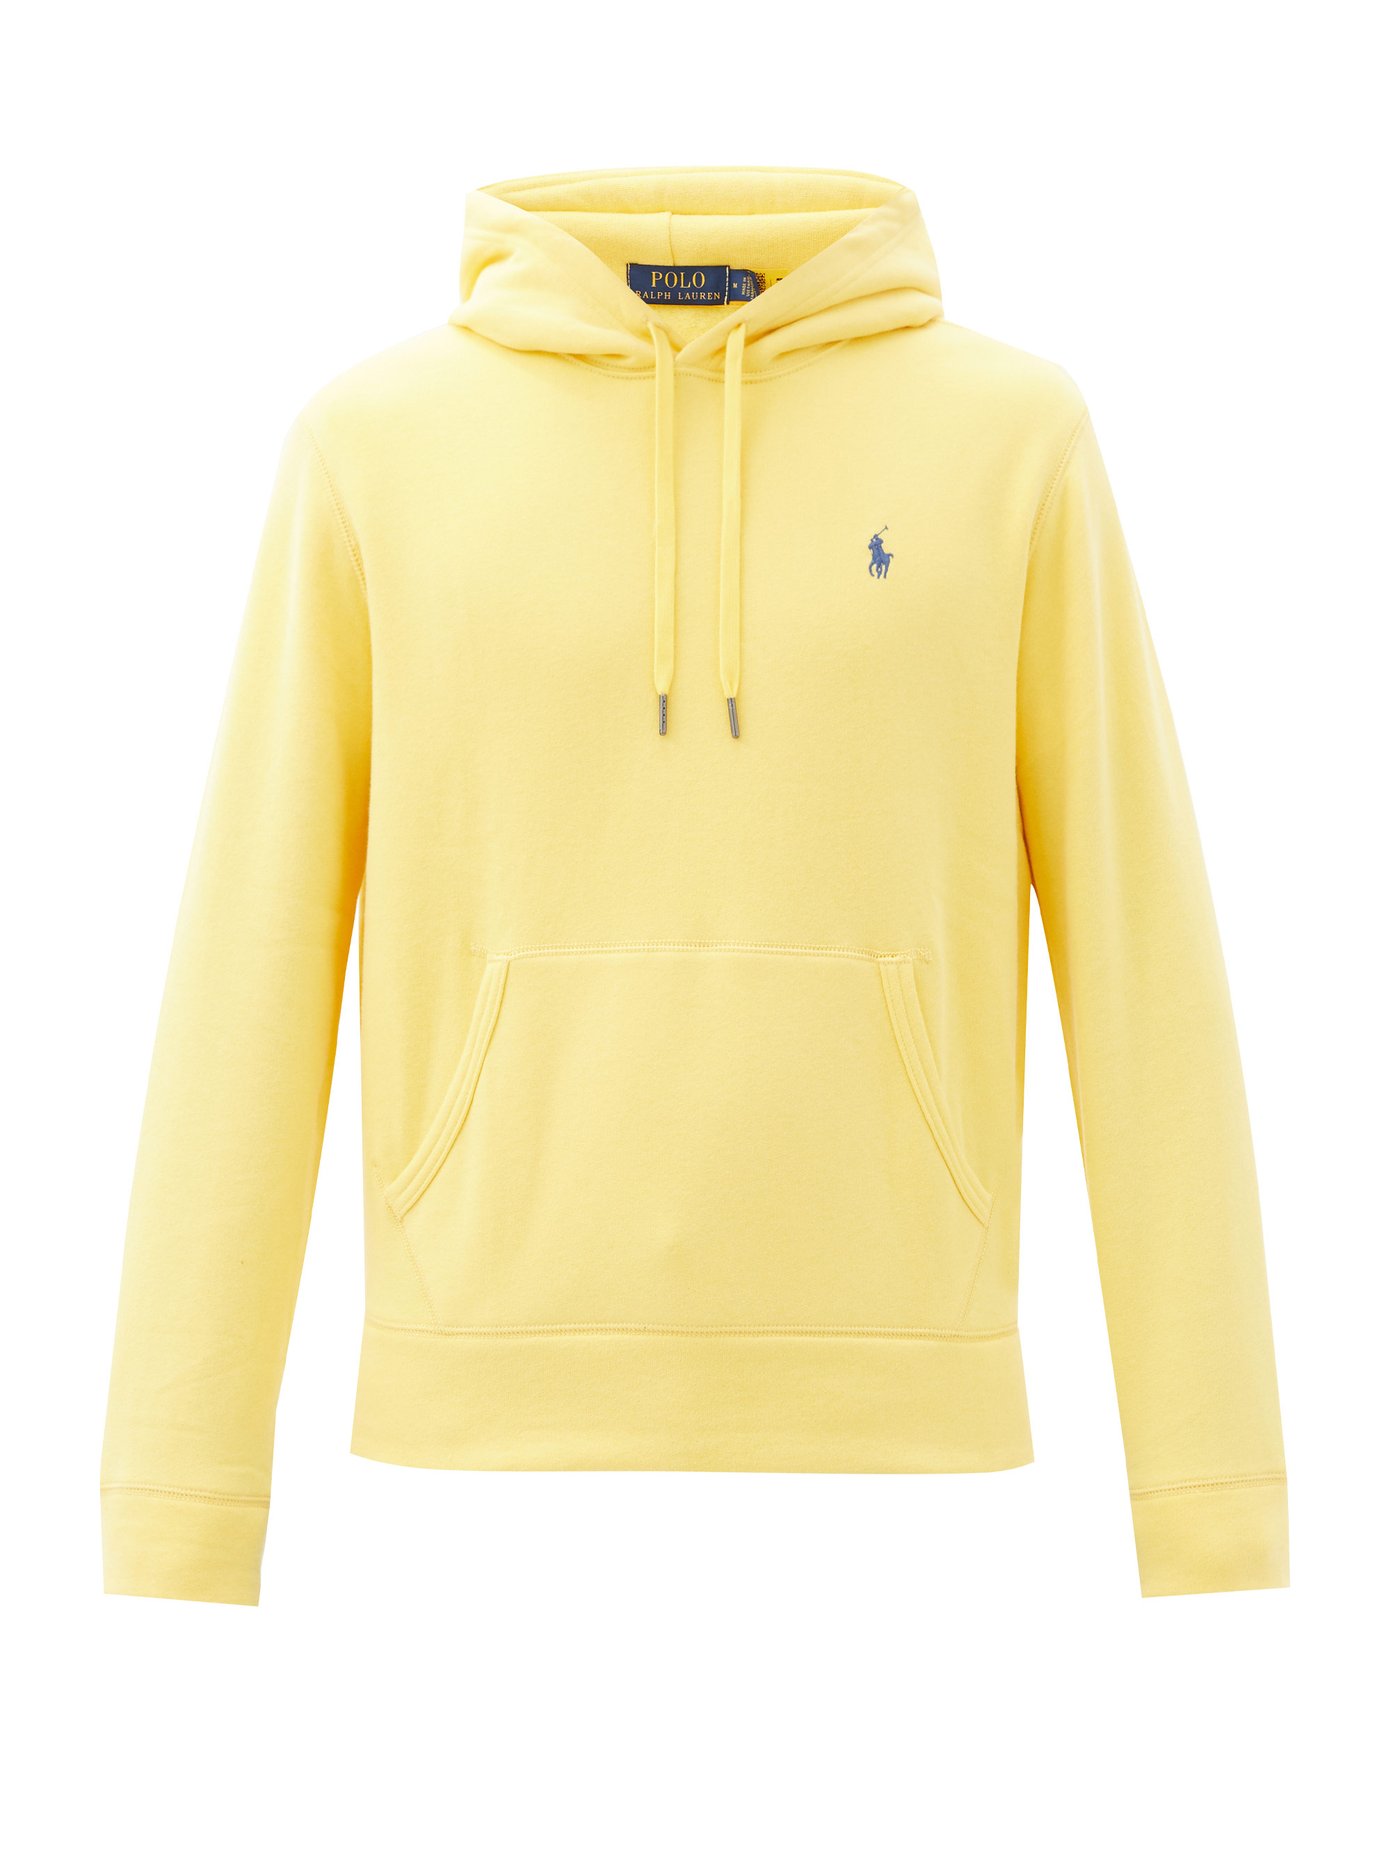 yellow polo sweatshirt